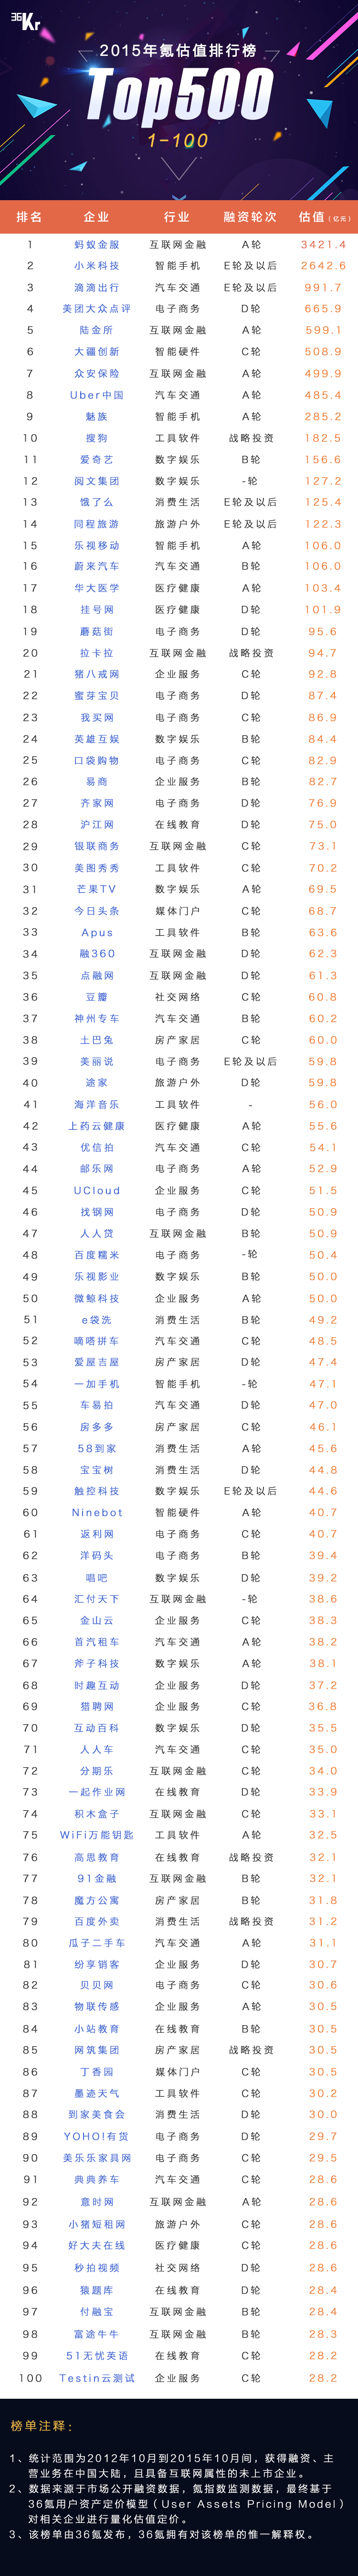 【WISE 2.0】【重磅发布】中国一级市场公司估值排名 500 强